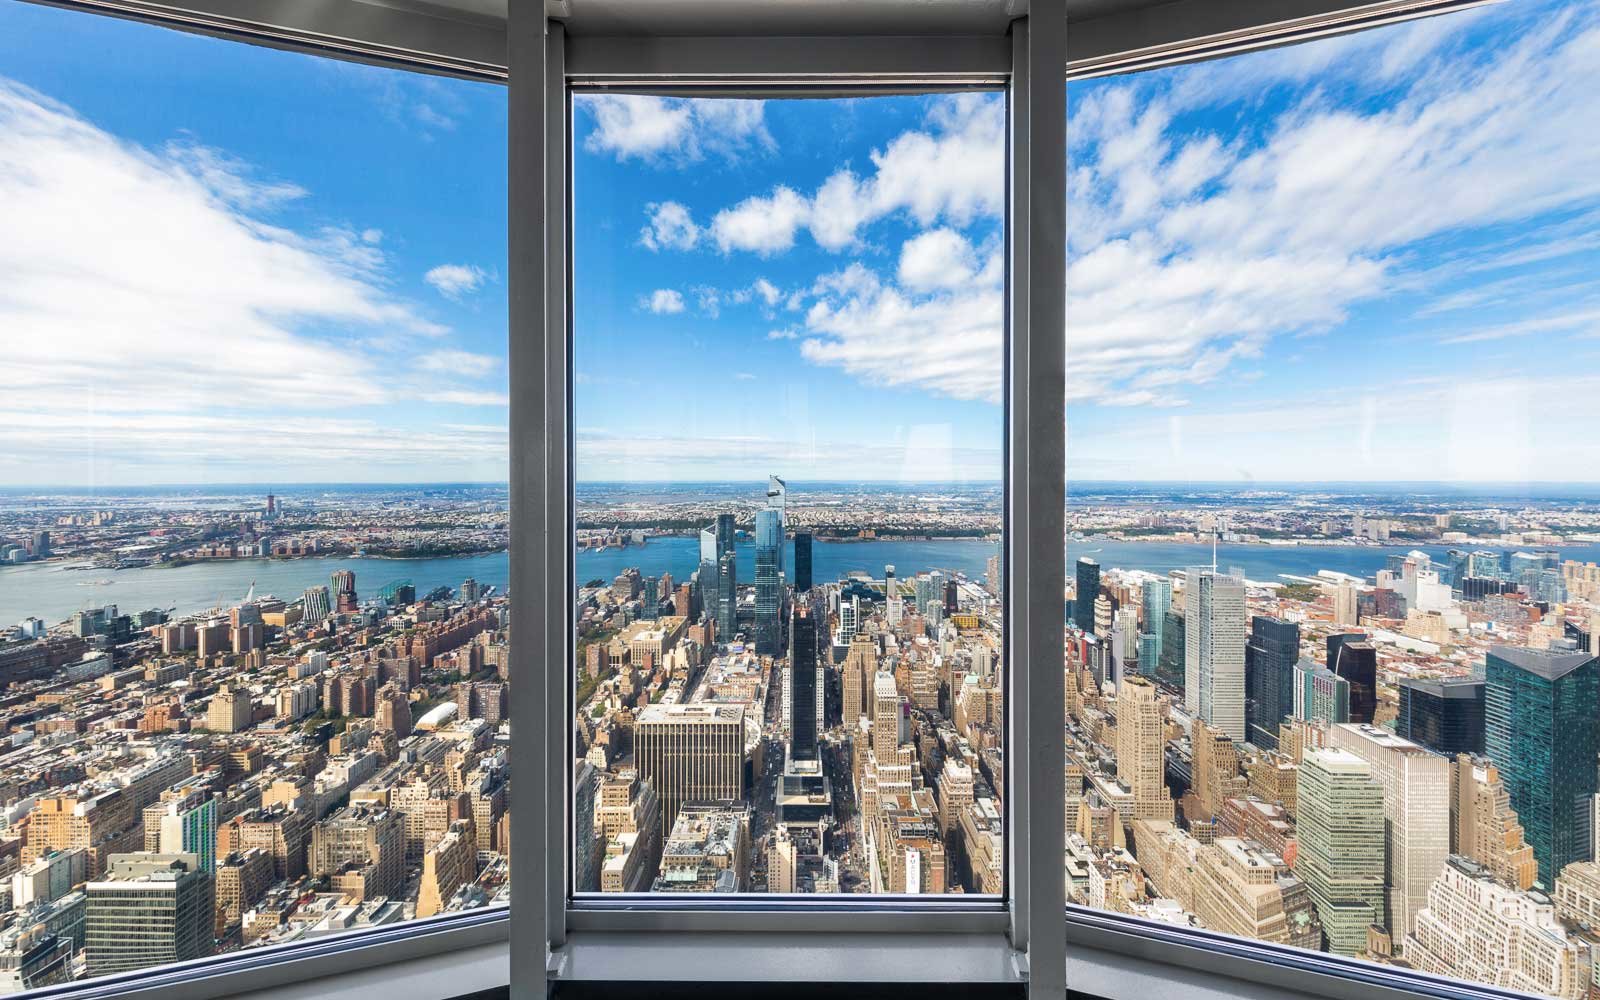 Em Nova York: Observatório no Topo do Empire State Building é Reaberto para Visitas